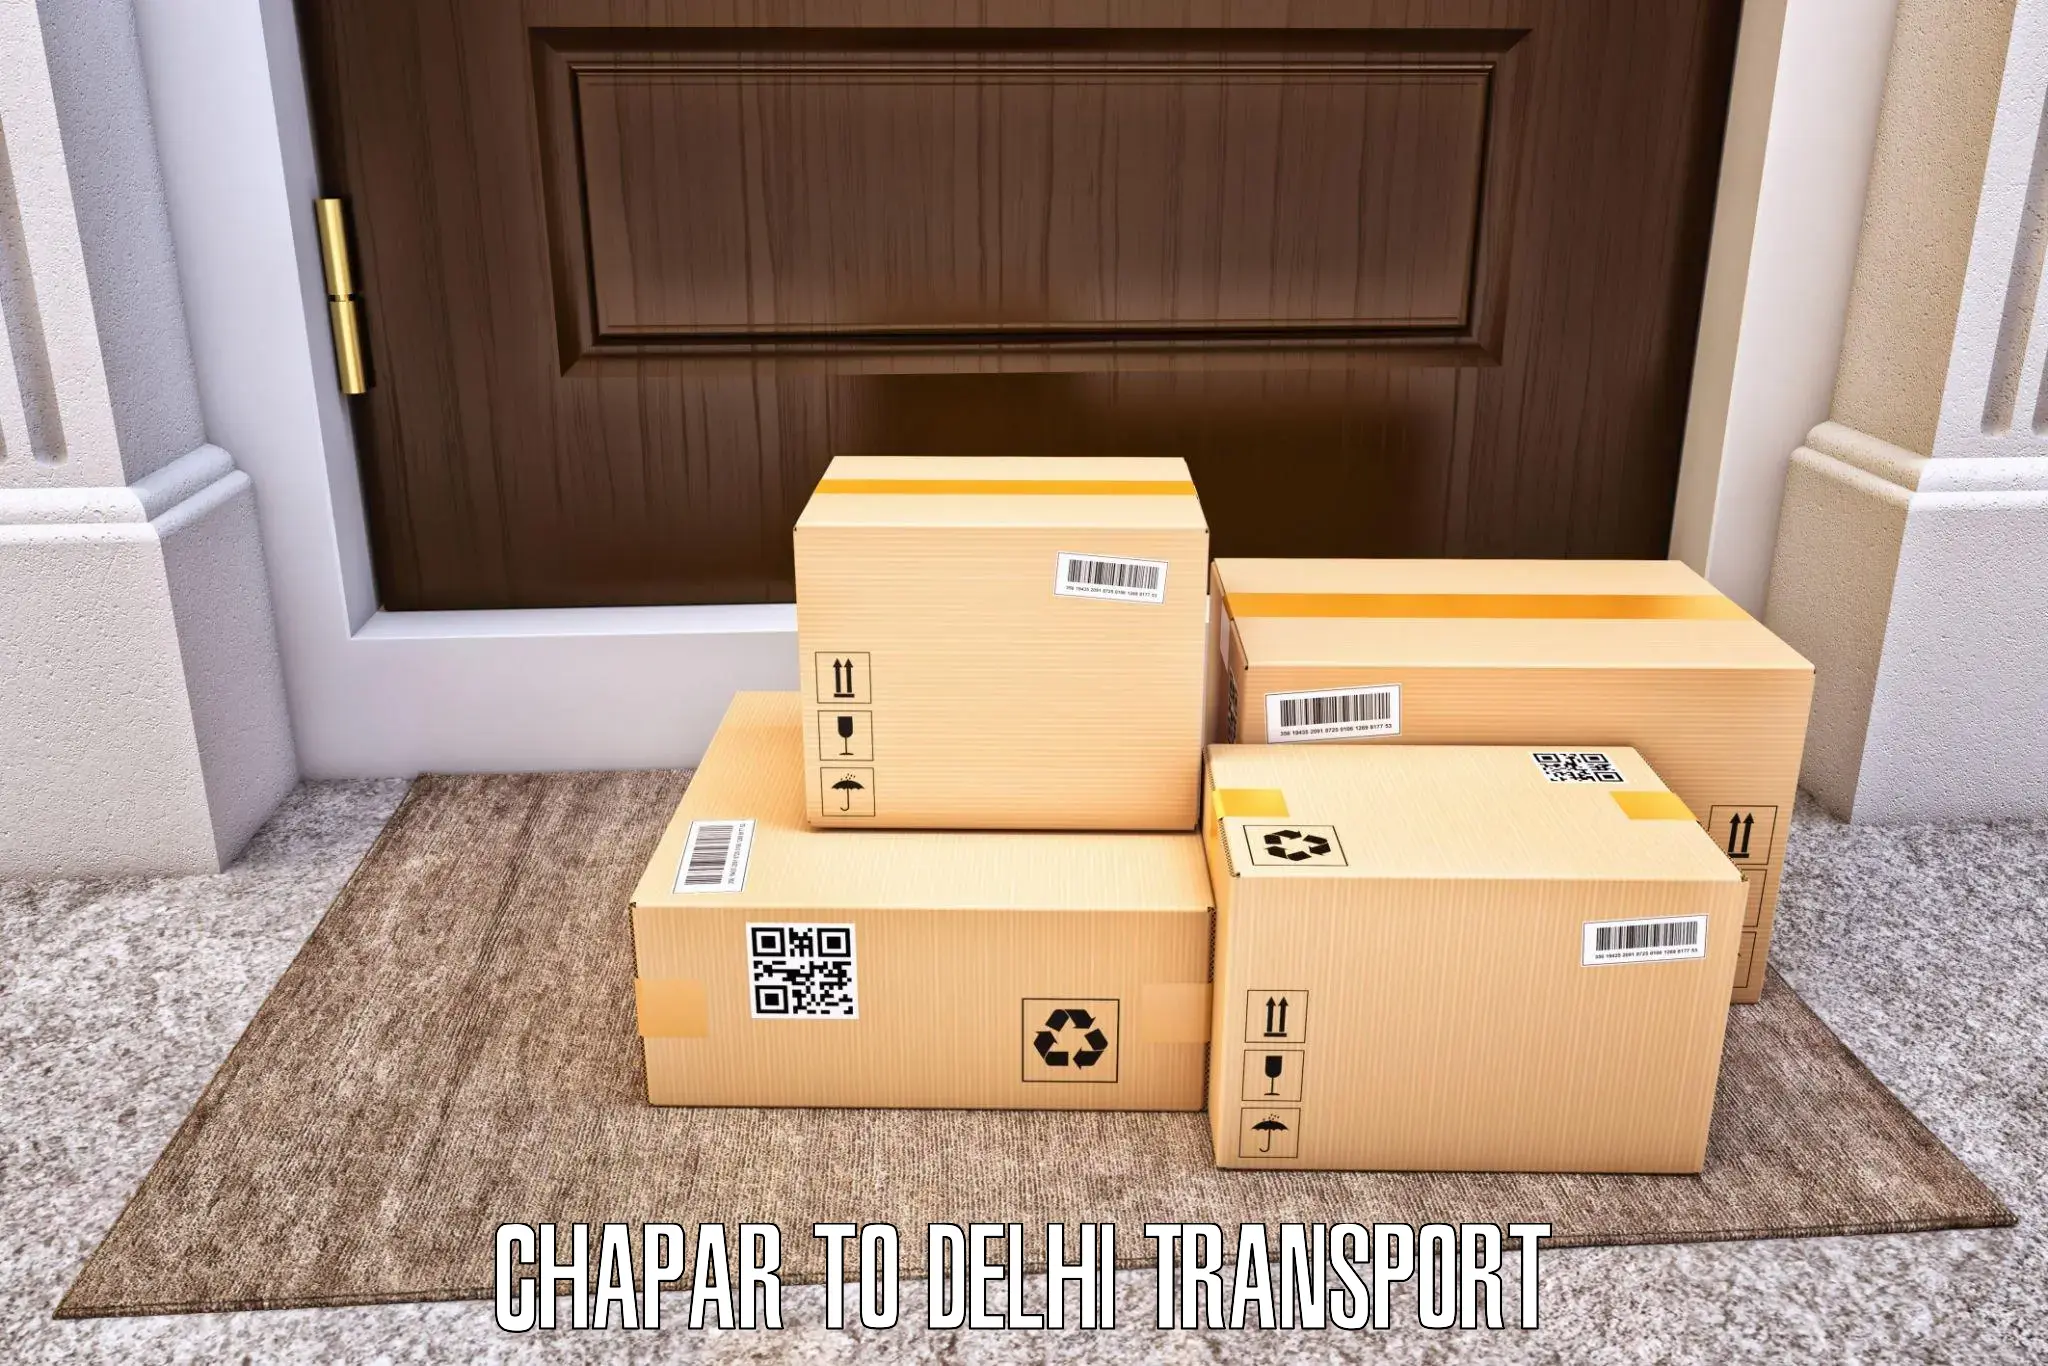 Bike transfer Chapar to Delhi